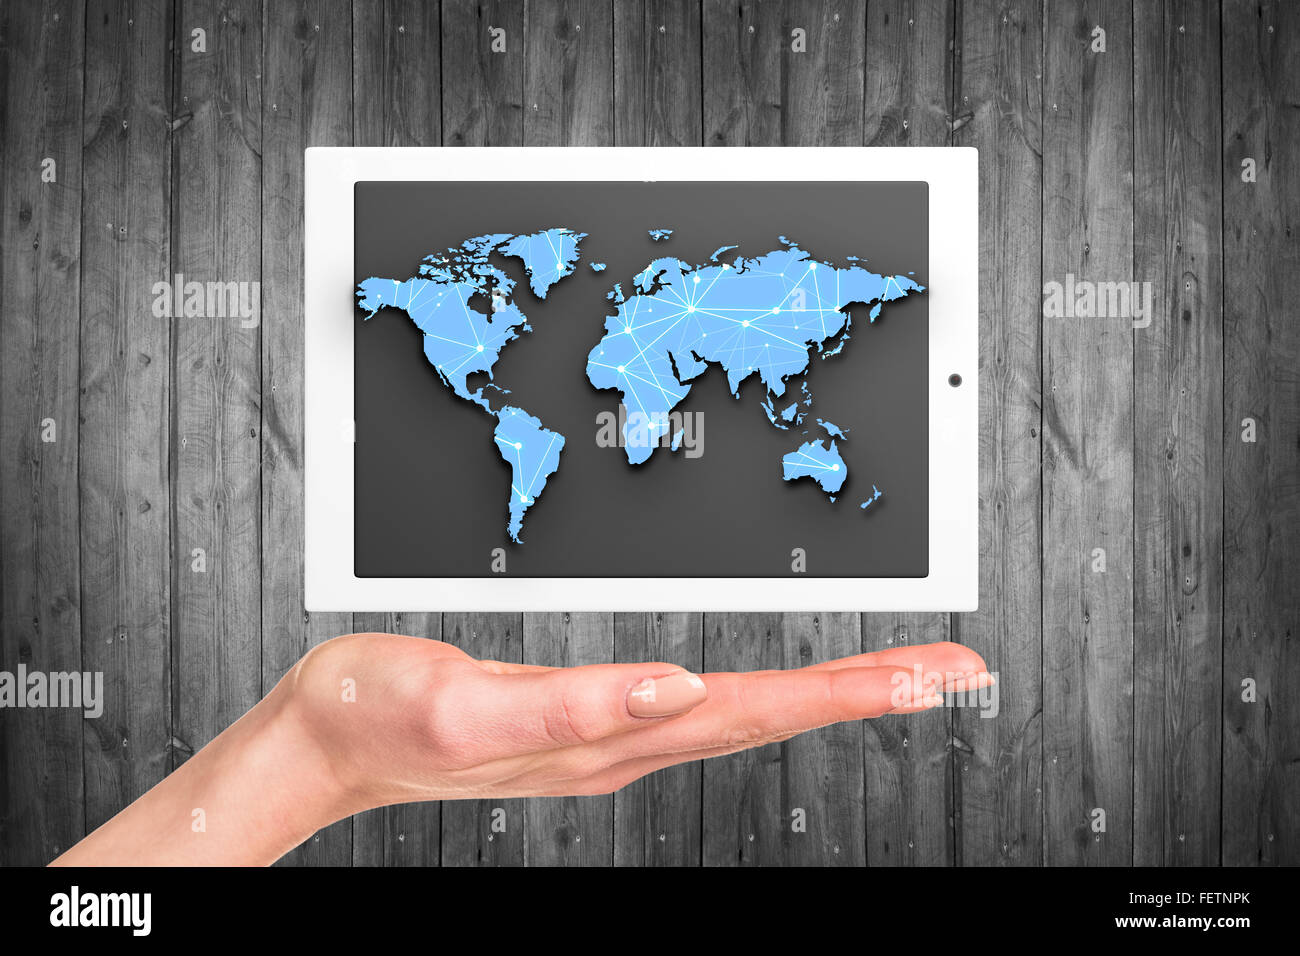 Tablette avec carte du monde Banque D'Images